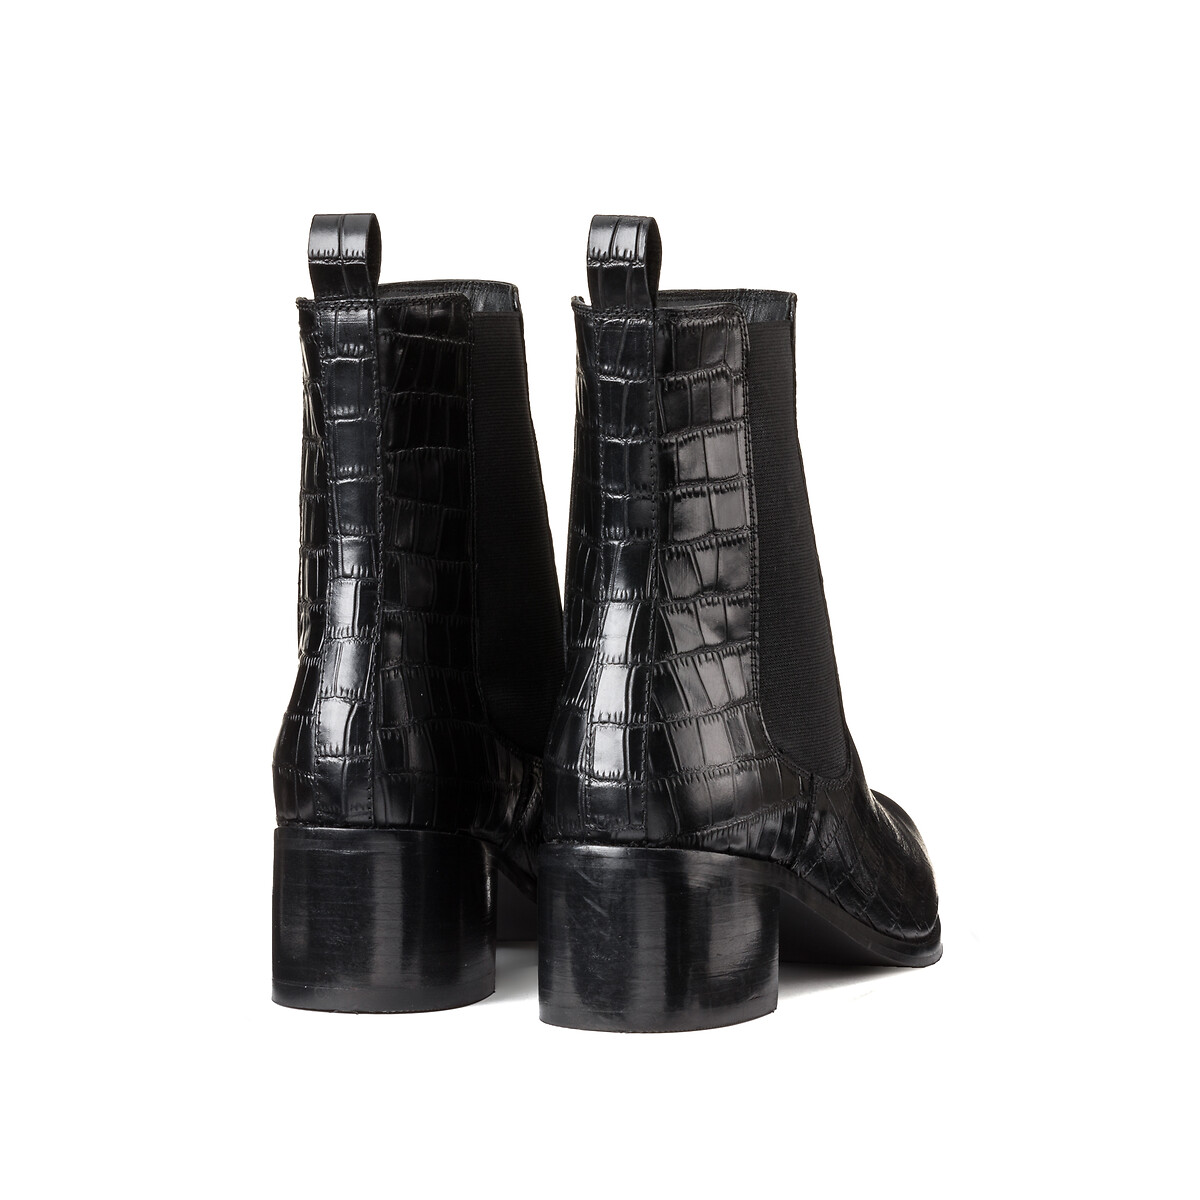 Ботинки Кожаные на широком каблуке для широкой стопы размеры 38-45 42 черный LaRedoute - фото 4